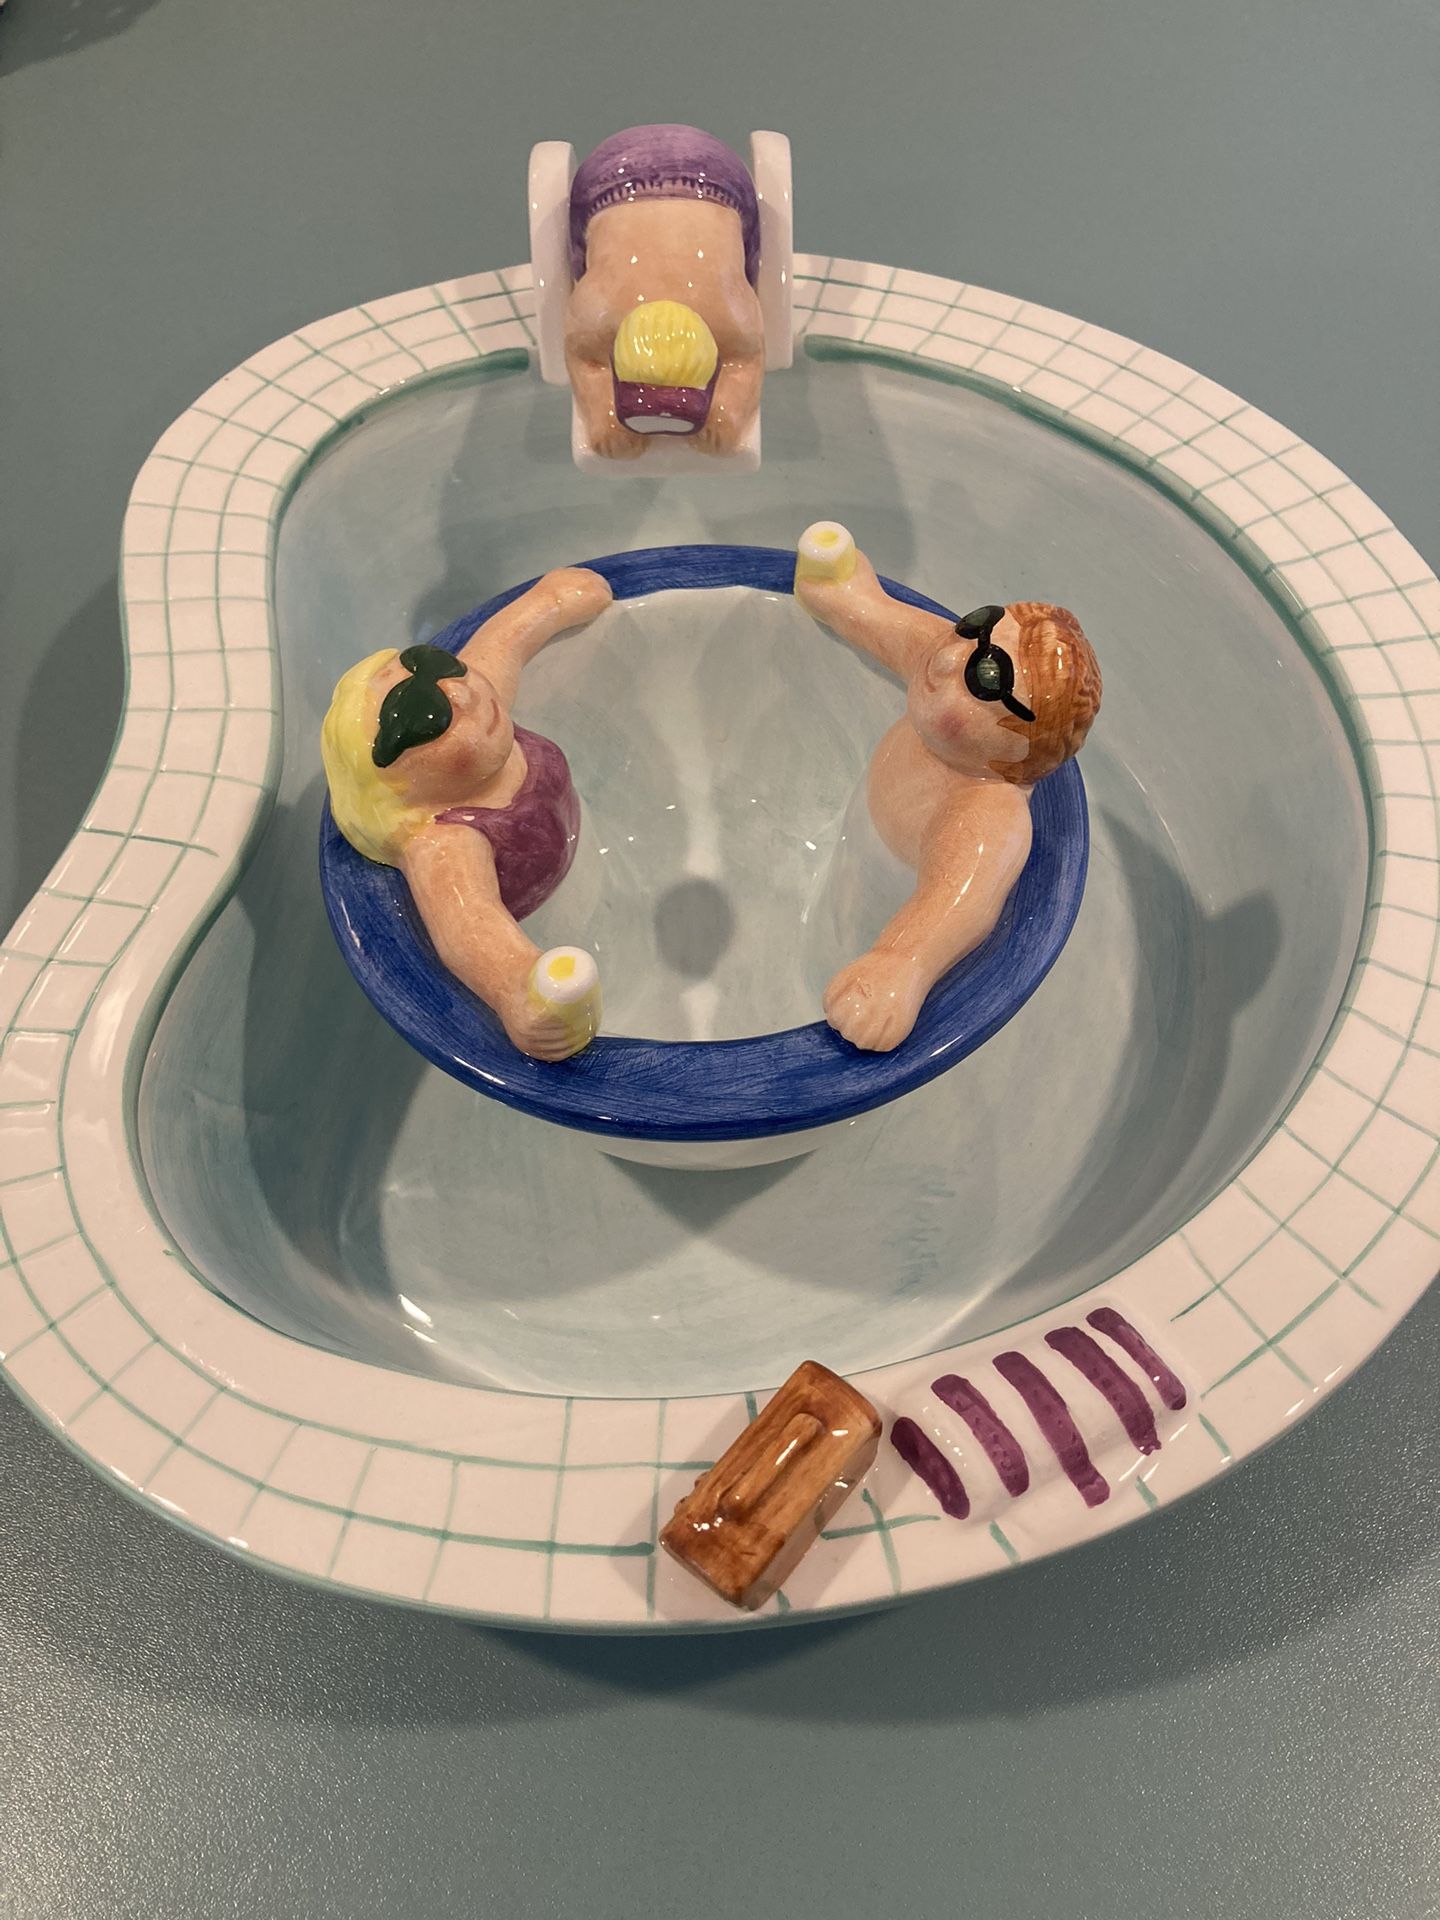 Swimming Pool Take A Dip Serving Ceramic Chip & Dip Bowl